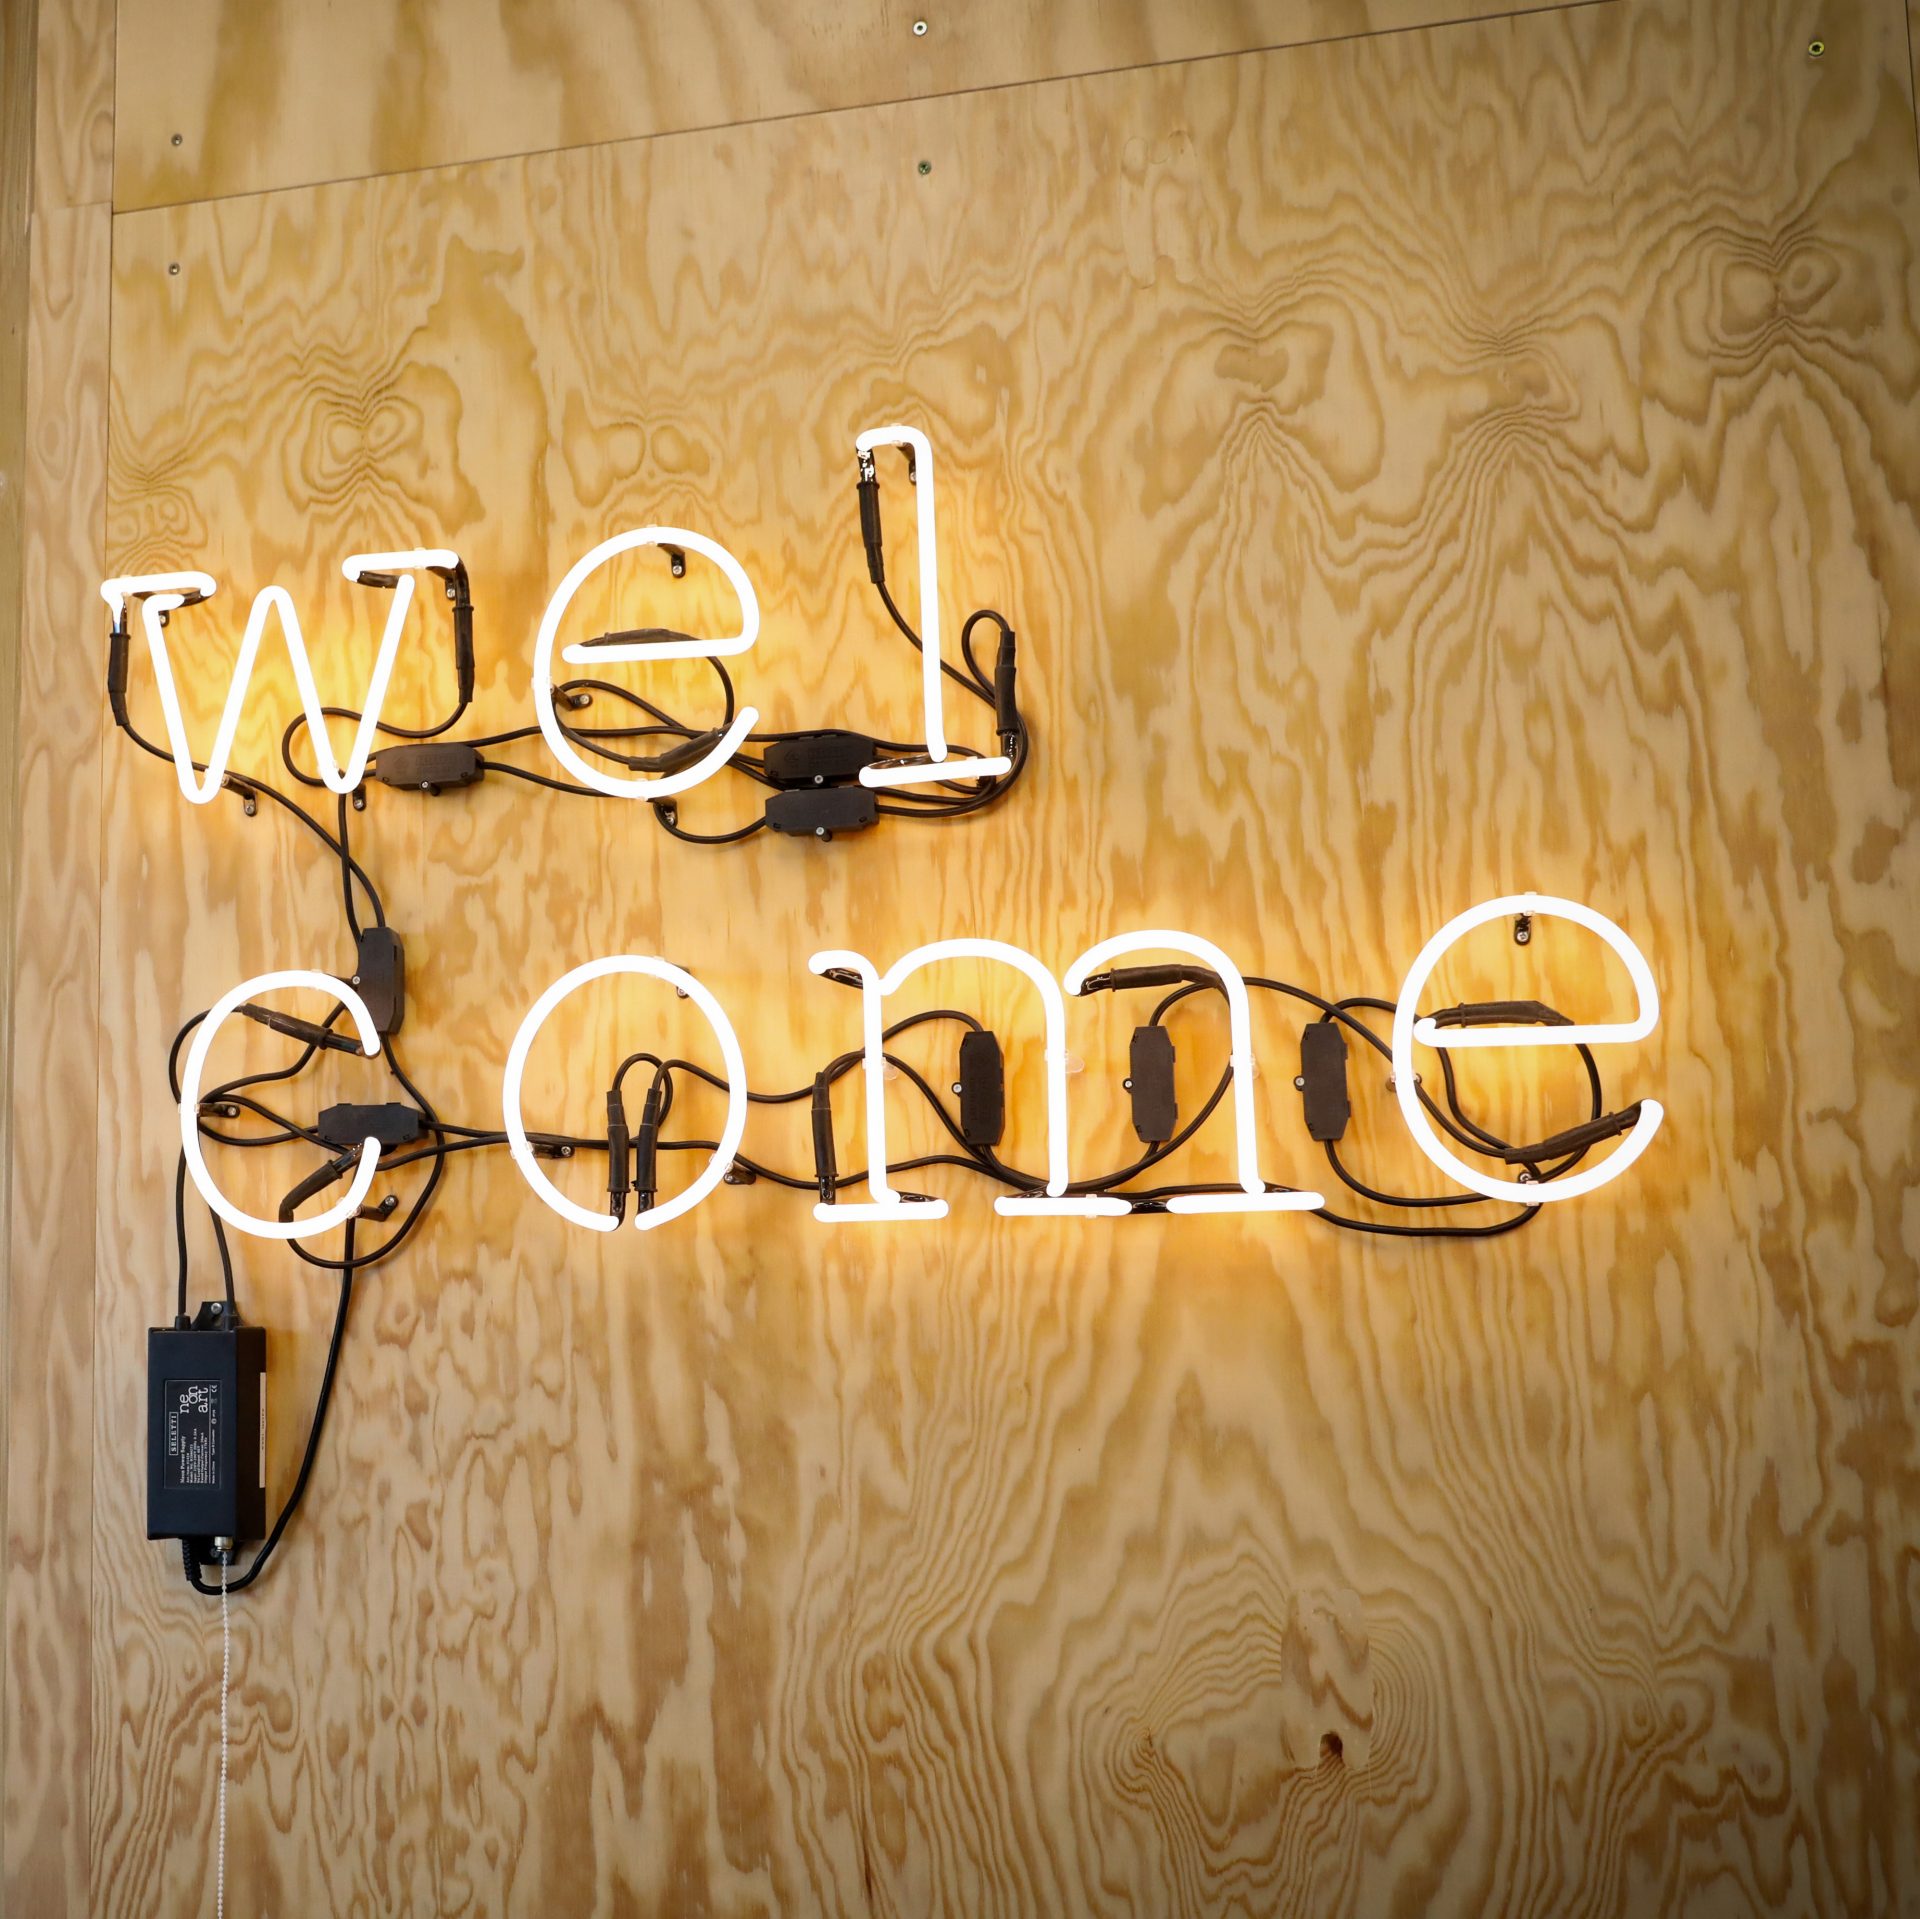 Das Bild zeigt das Wort "Welcome" als Leuchtschrift an einer Holzwand.